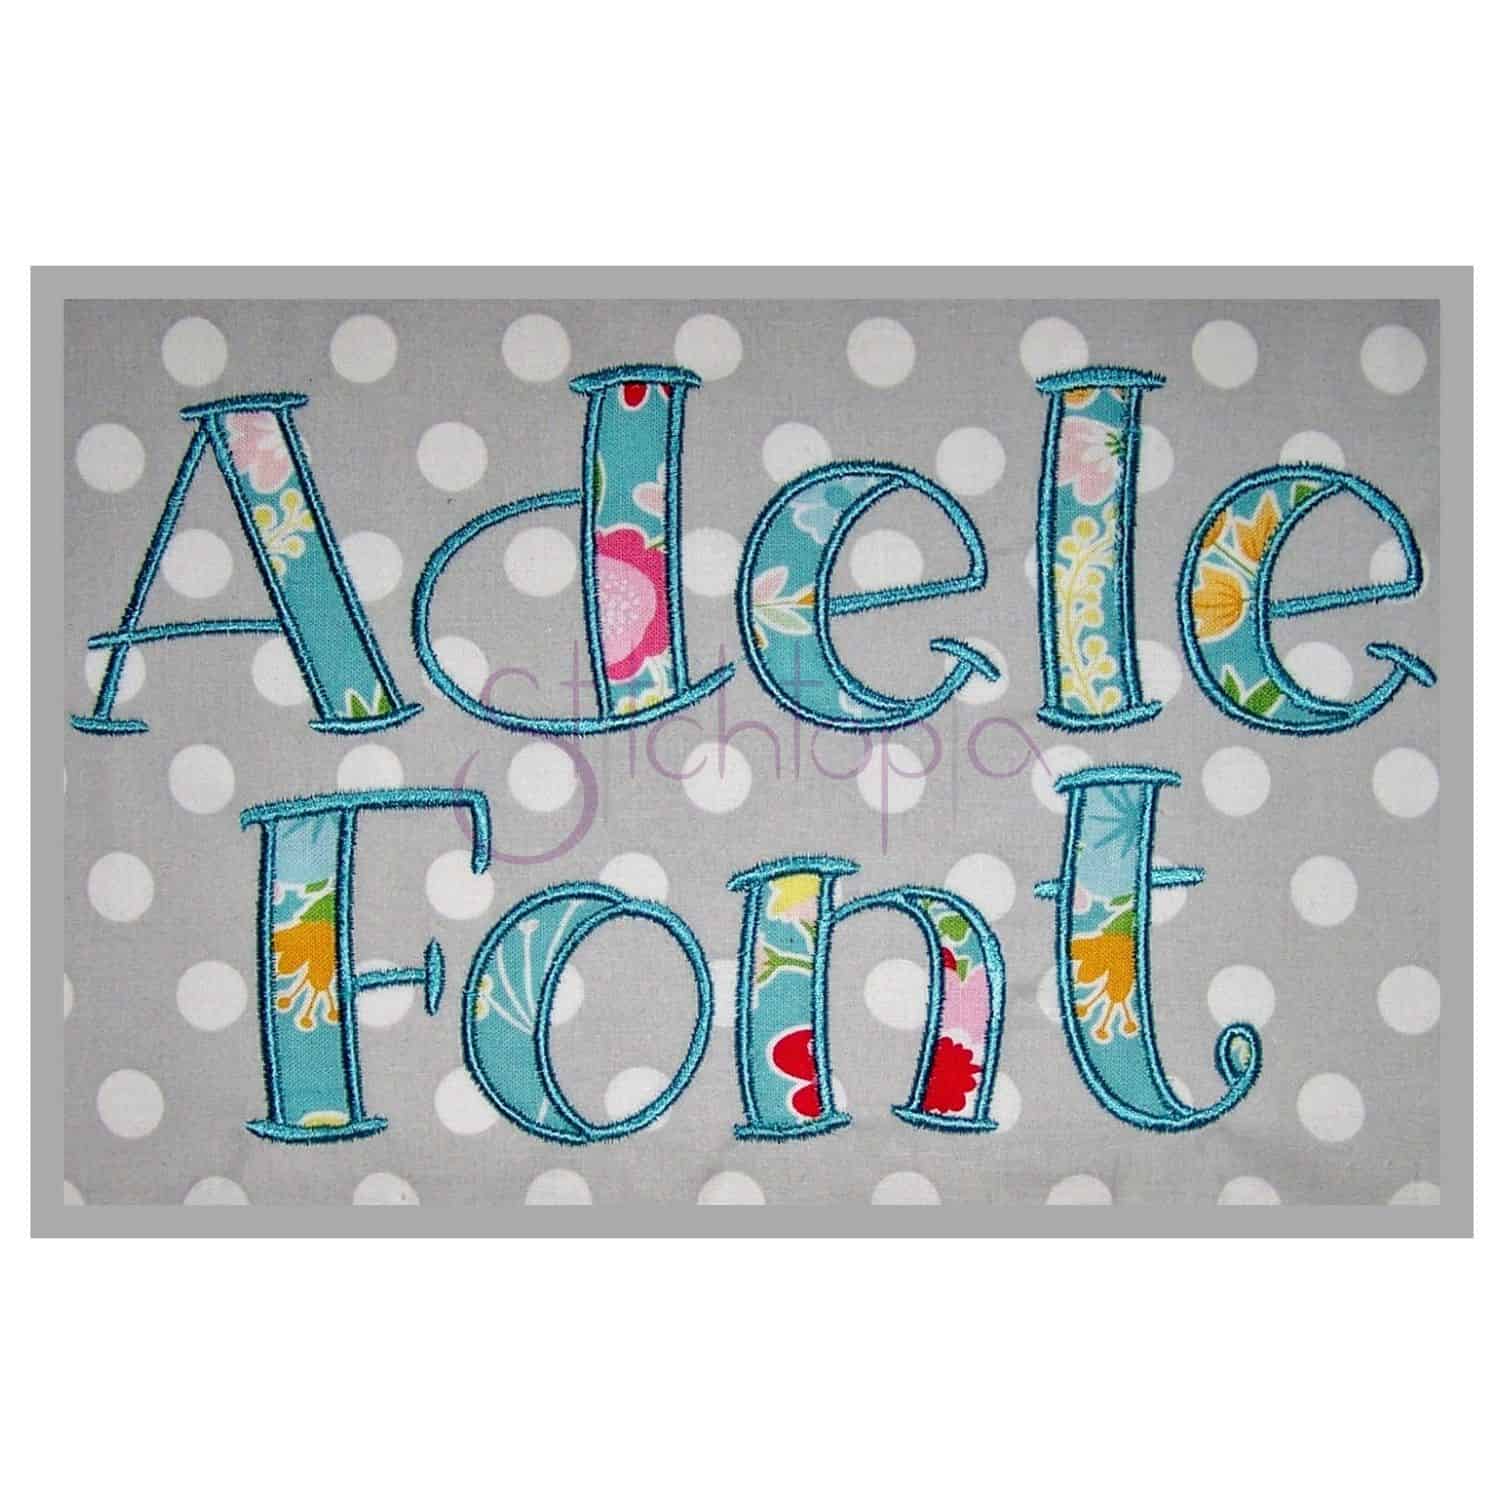 Adele Applique Font - 2.5